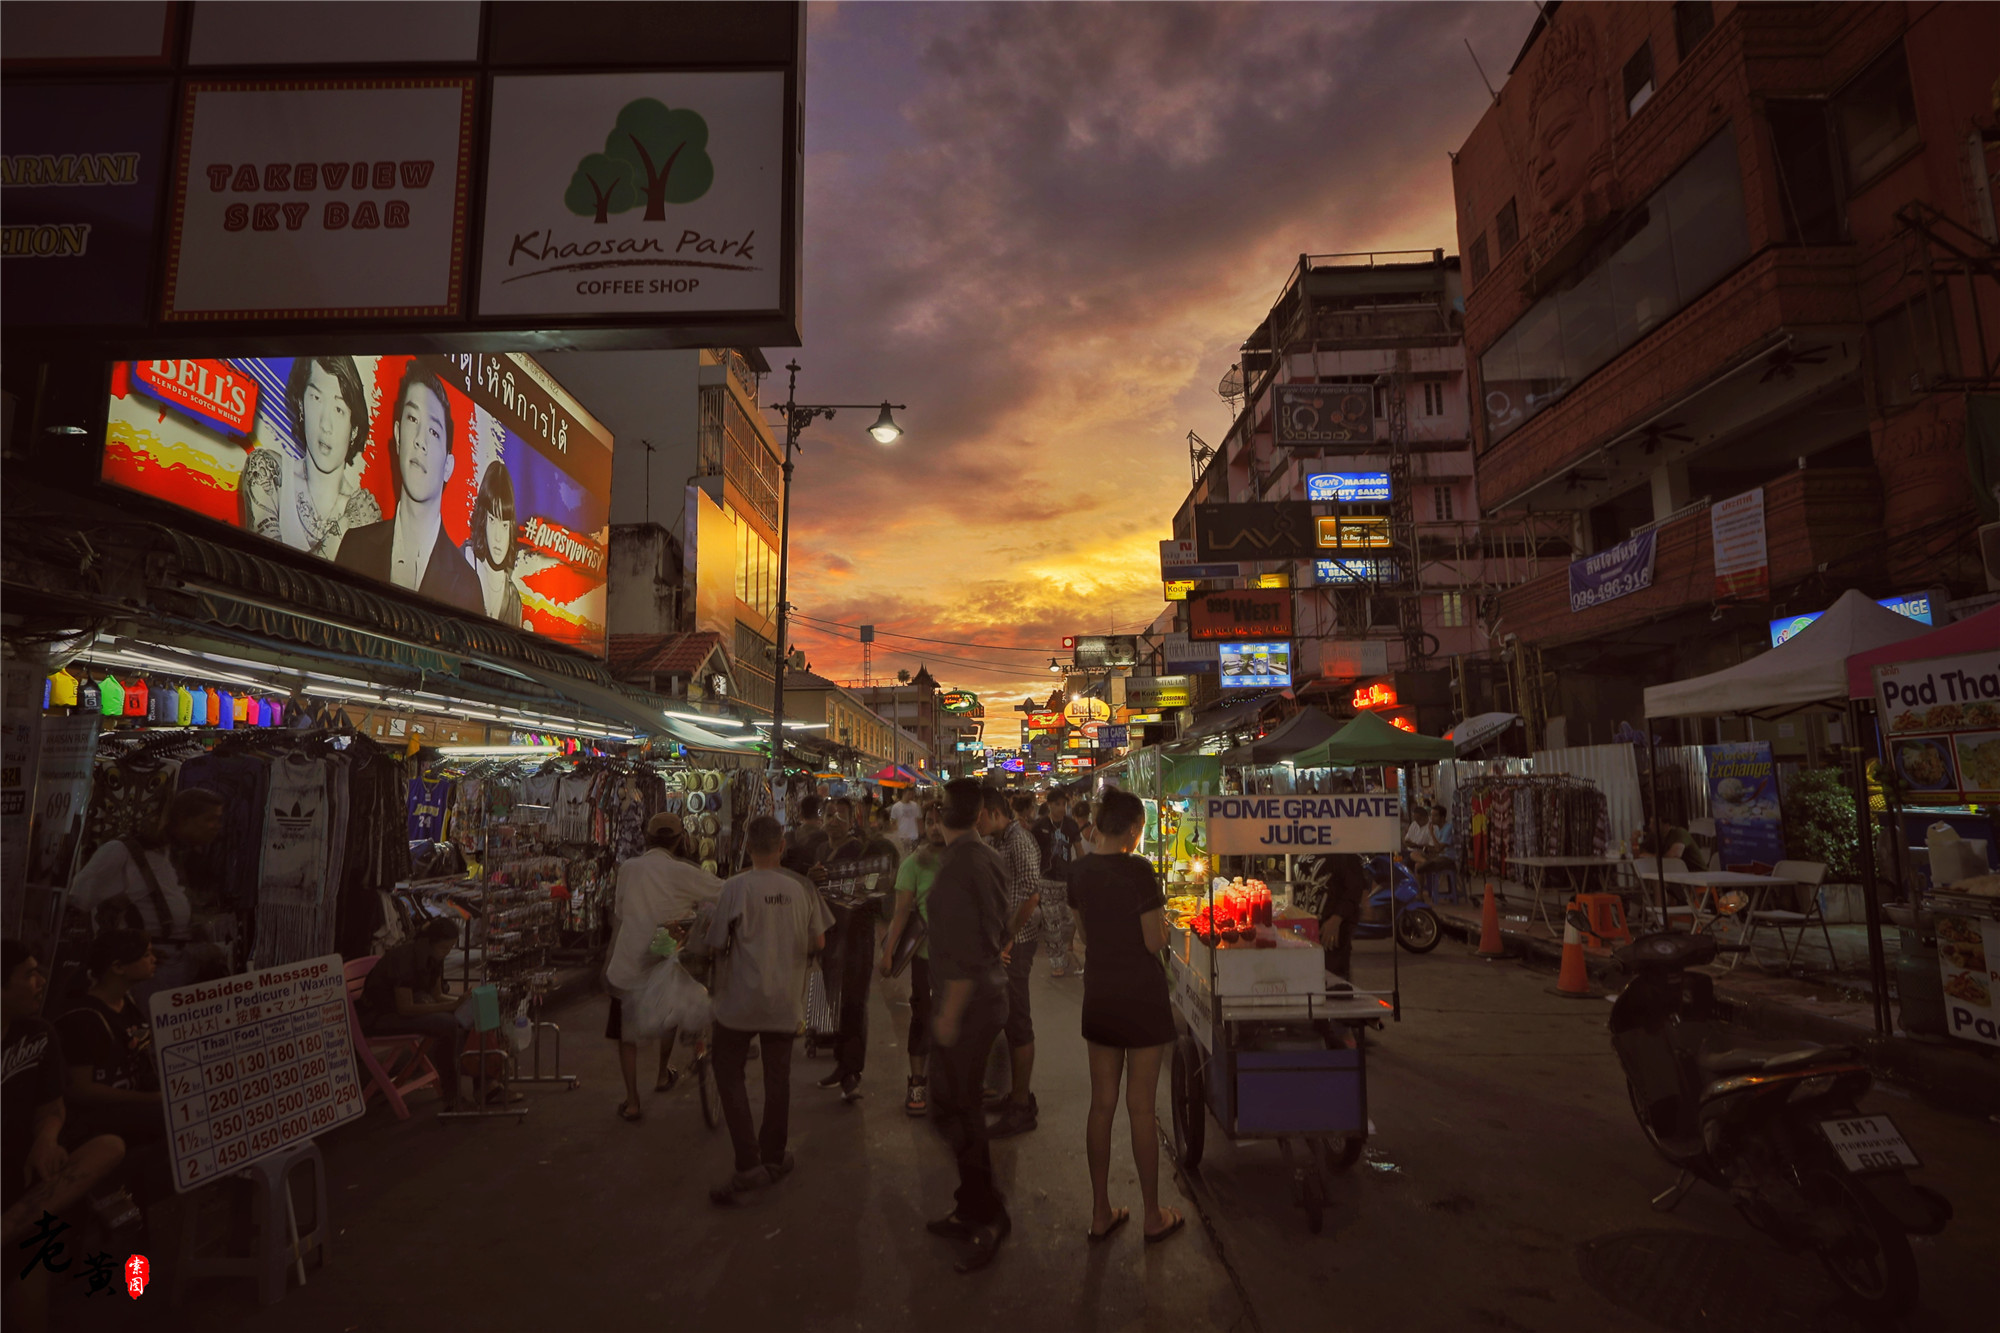 2019考山路夜市_旅游攻略_门票_地址_游记点评,曼谷旅游景点推荐 - 去哪儿攻略社区